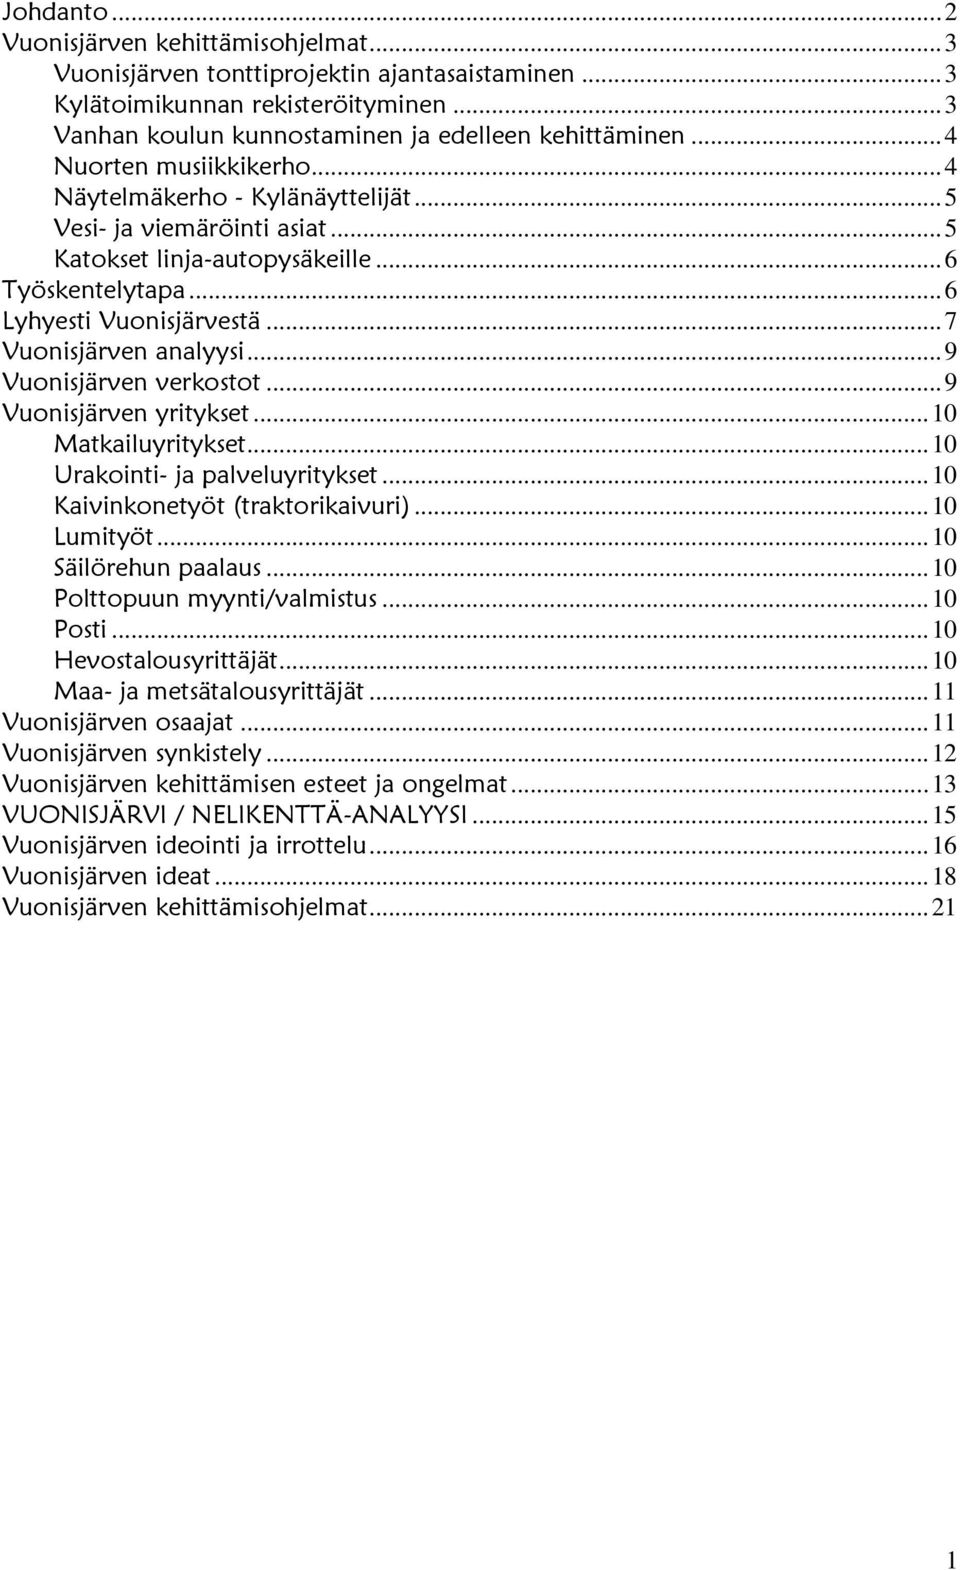 .. 7 Vuonisjärven analyysi... 9 Vuonisjärven verkostot... 9 Vuonisjärven yritykset... 10 Matkailuyritykset... 10 Urakointi- ja palveluyritykset... 10 Kaivinkonetyöt (traktorikaivuri)... 10 Lumityöt.